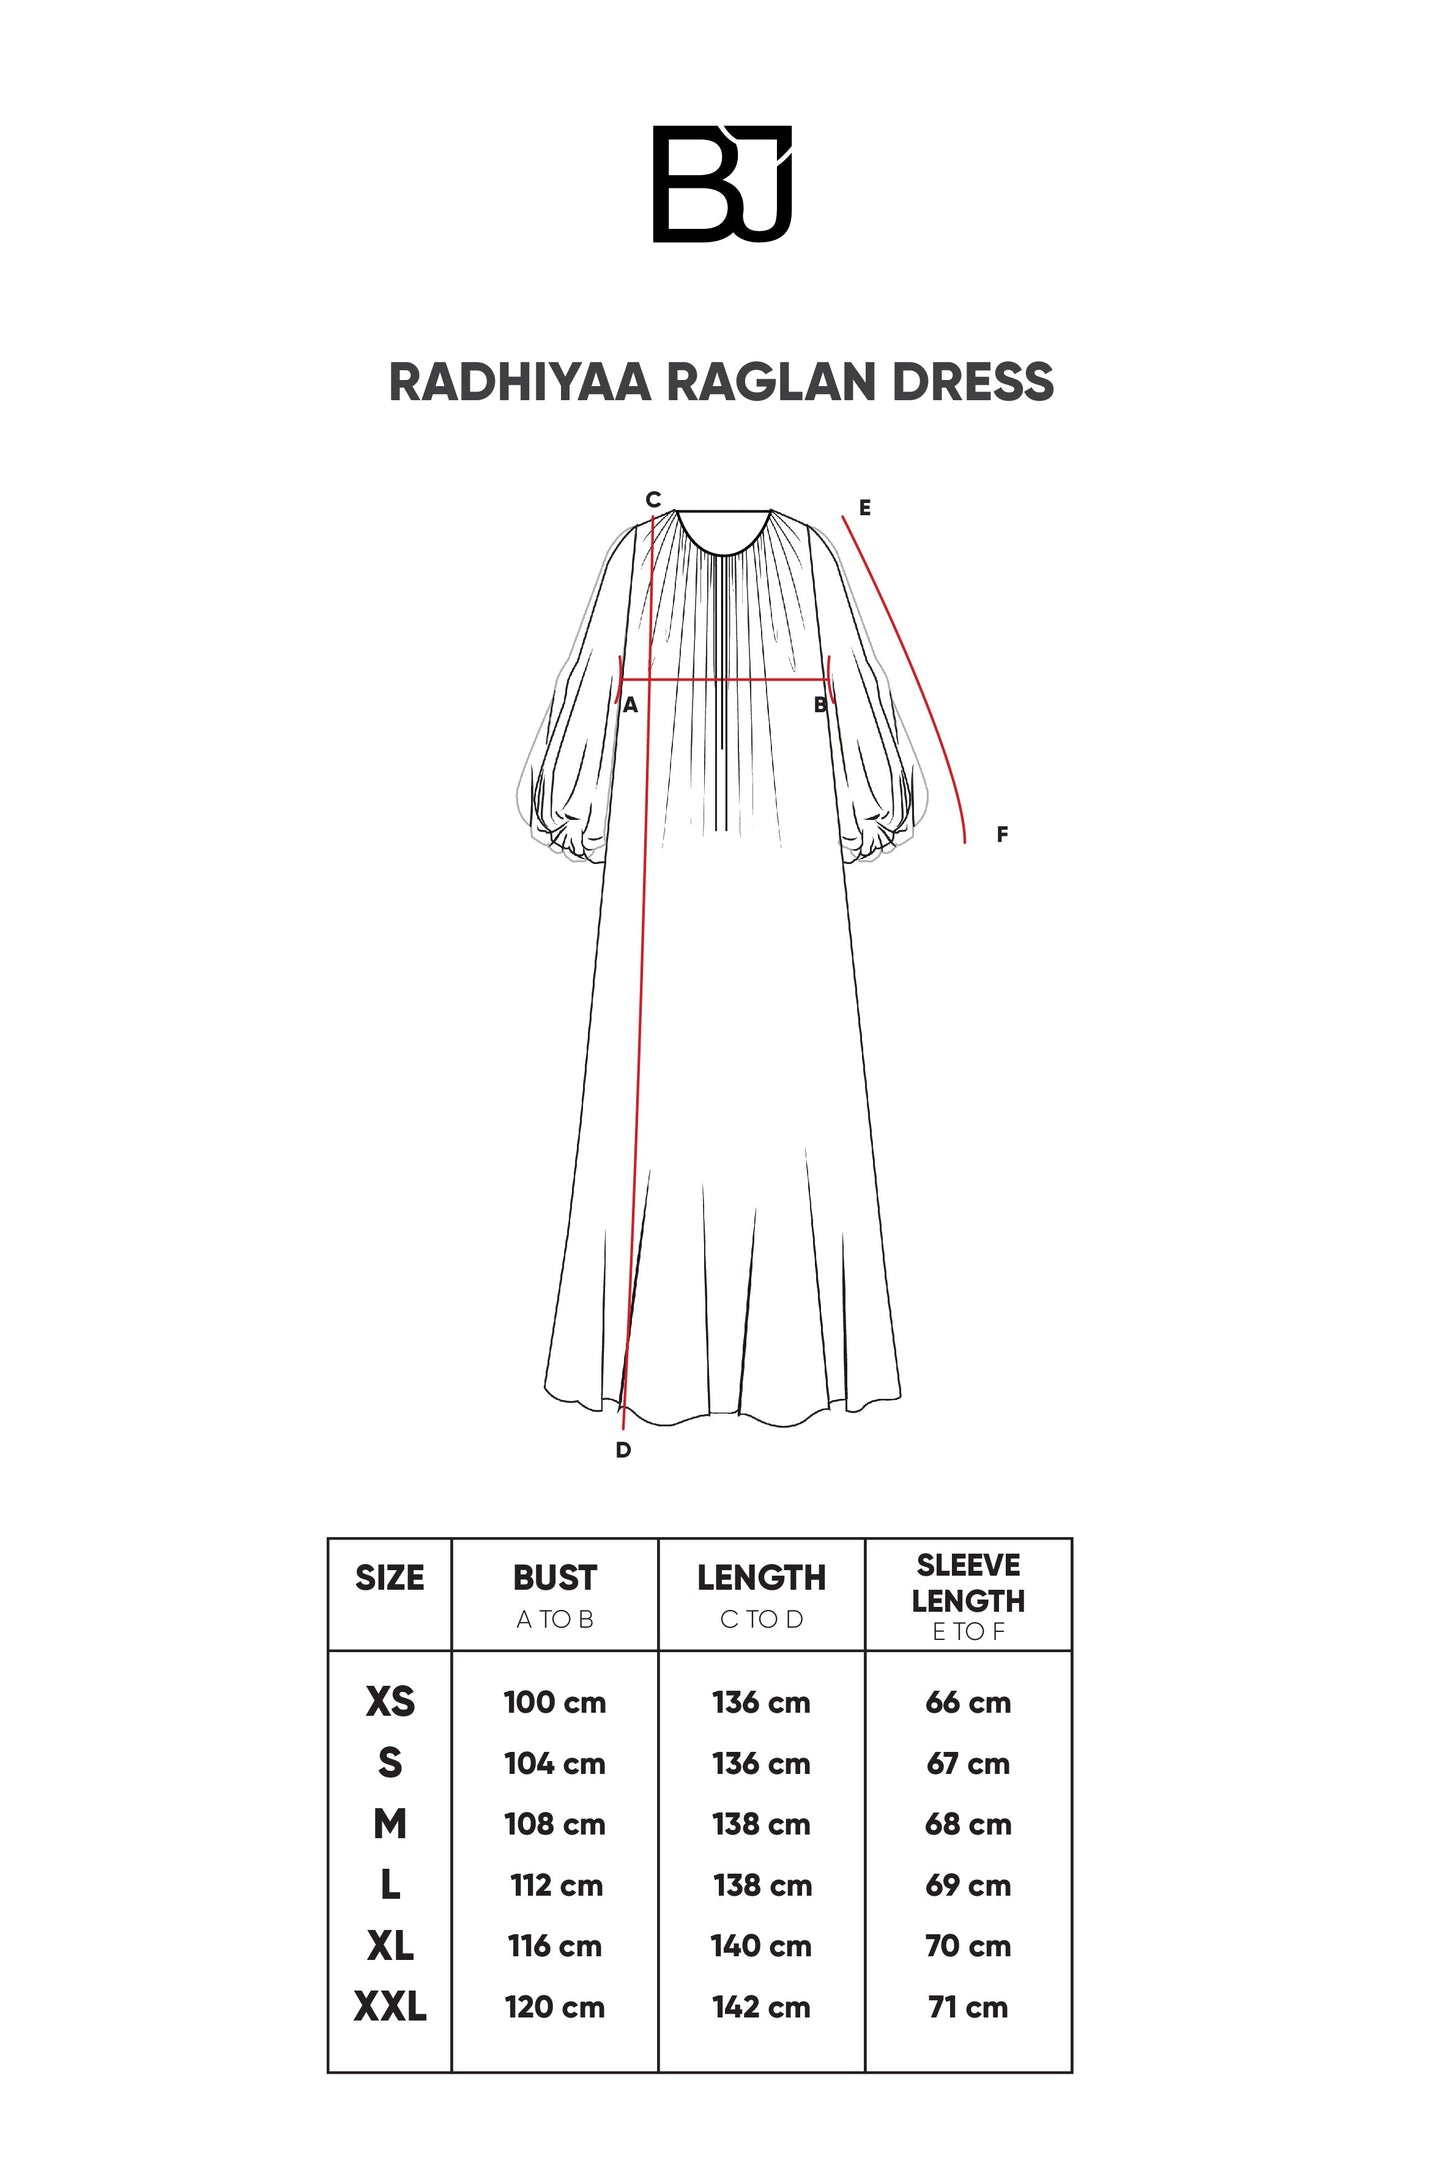 Radhiyaa Raglan Dress - Black